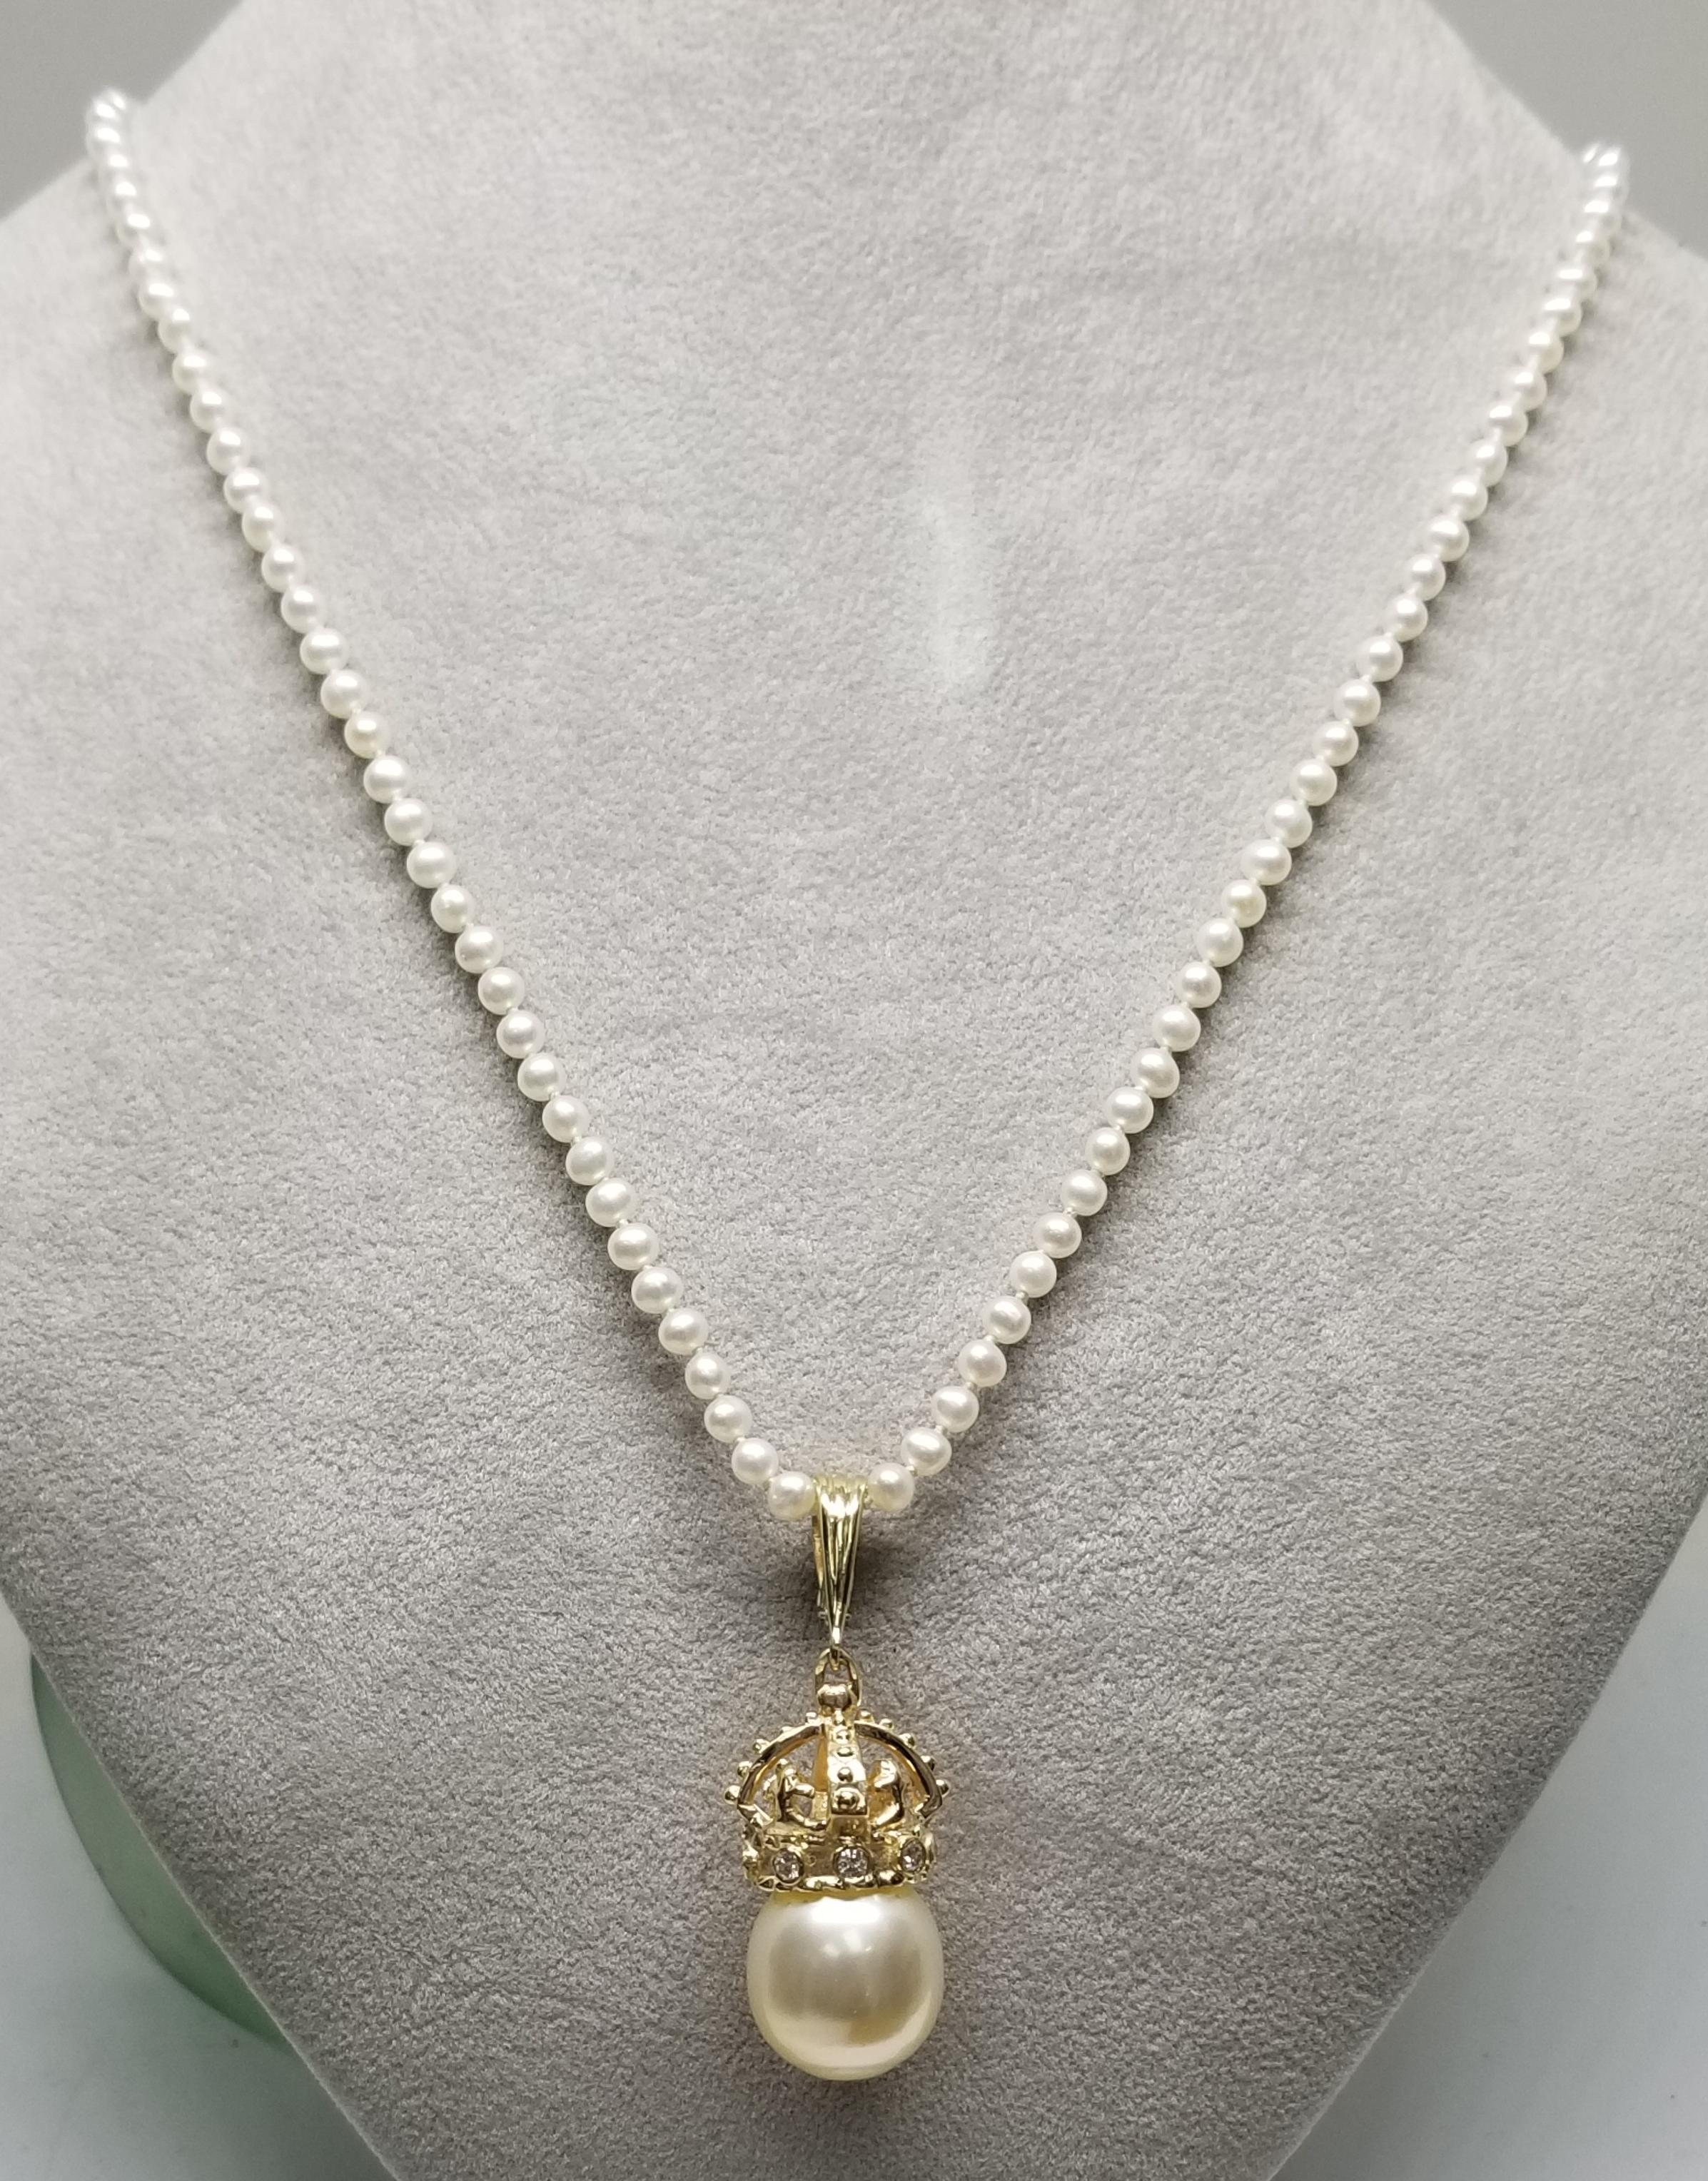 Pendentif en or jaune 14k avec couronne de diamants et perle de mer du sud, contenant une perle de mer du sud de 15mm et 8 diamants ronds de pleine taille ; couleur 